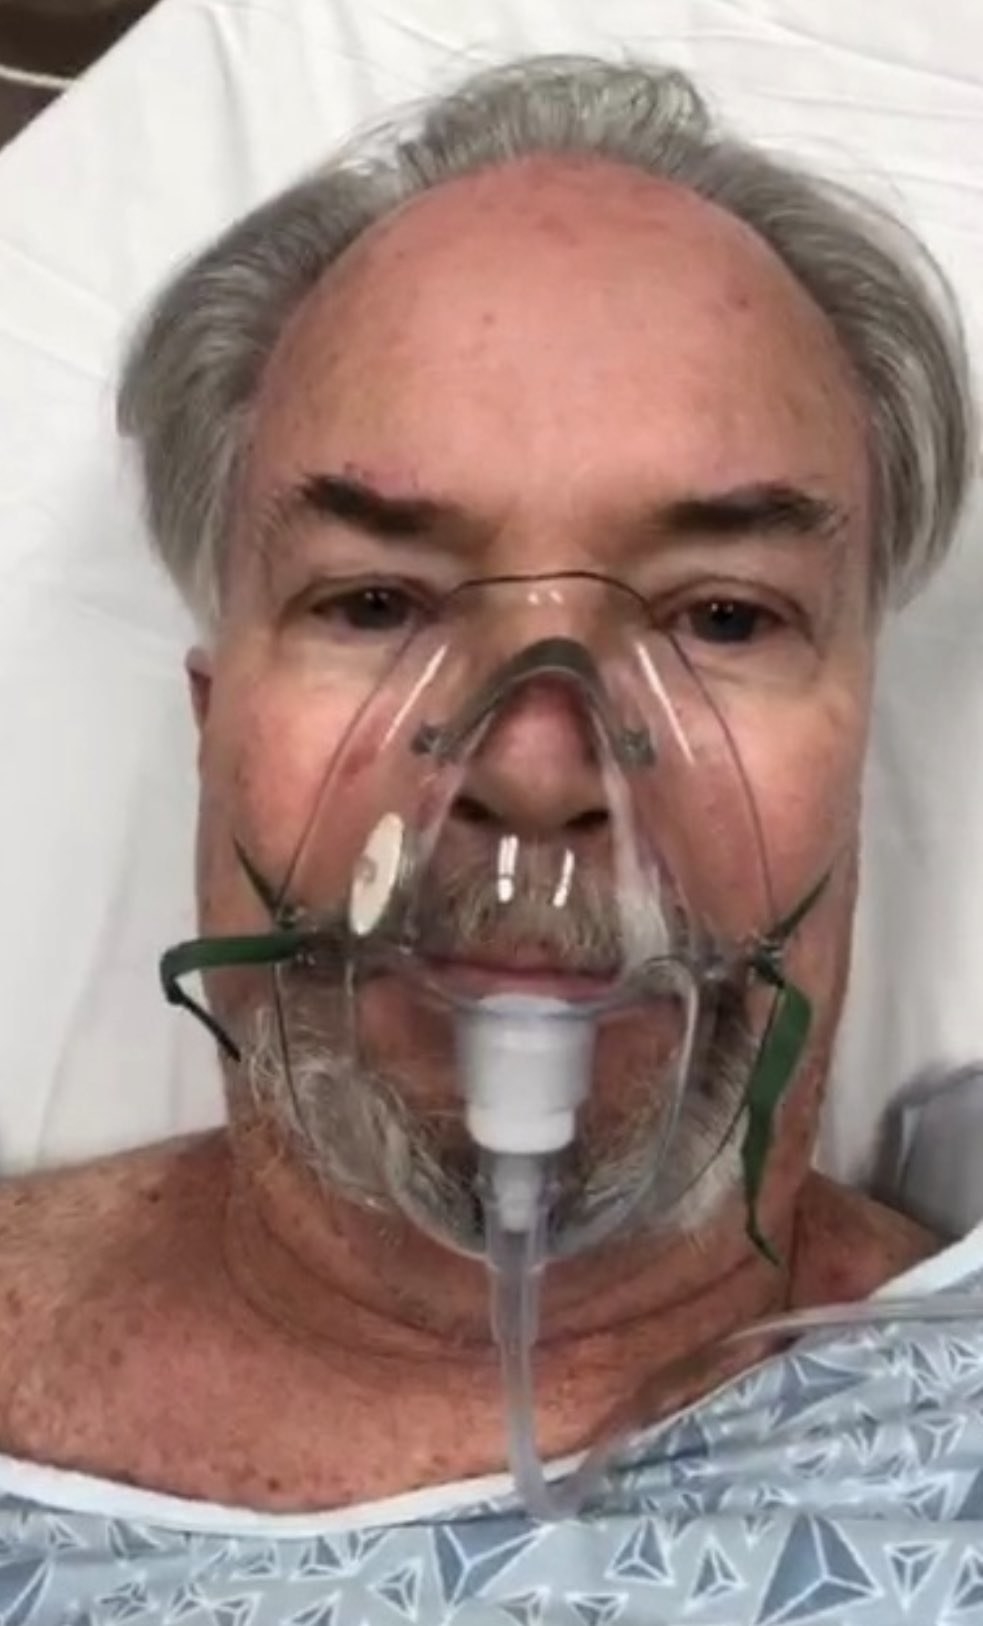 Steve Austin in the ICU wearing an oxygen mask